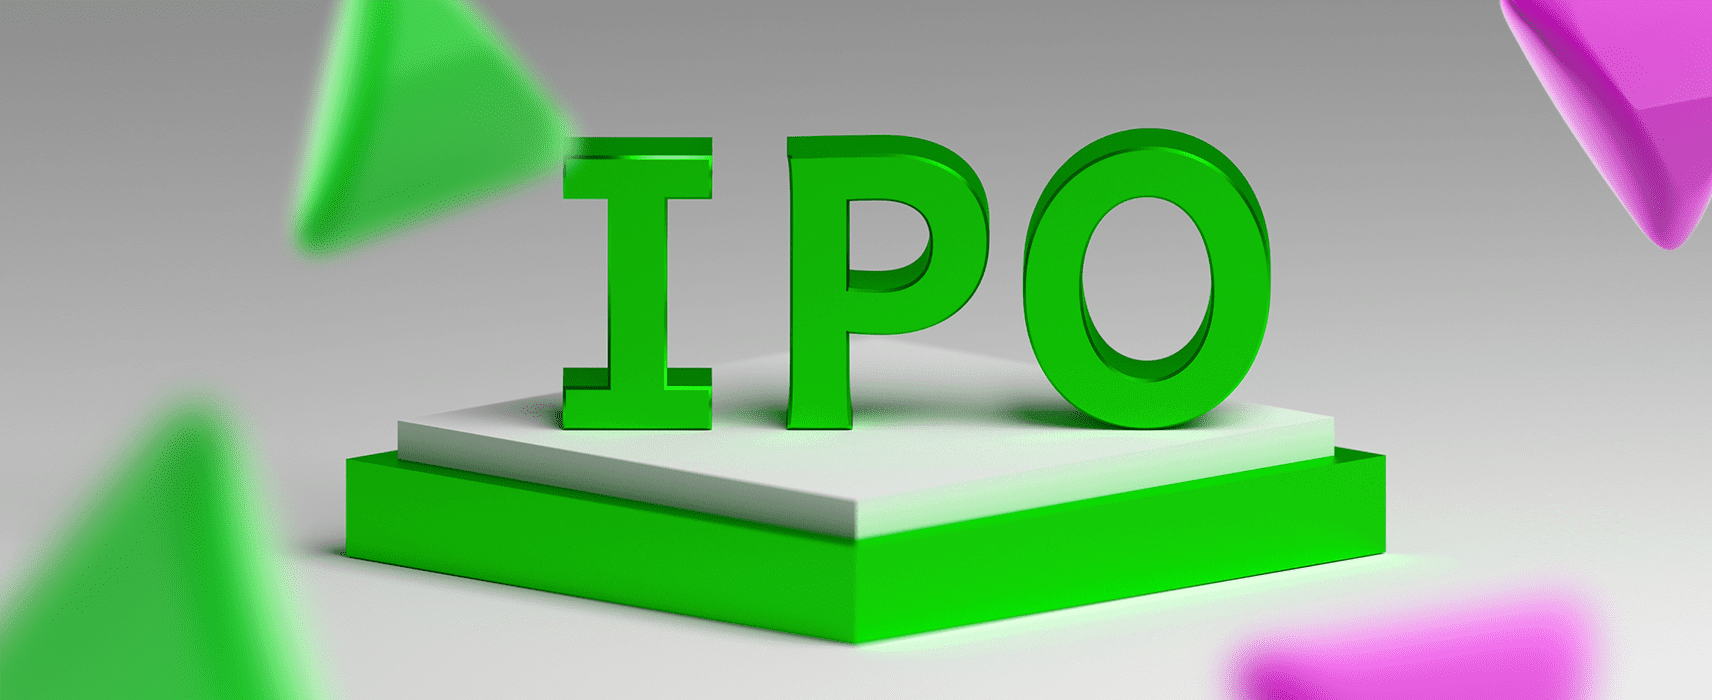 Как участвовать в IPO новичку: инструкция, брокеры, риски